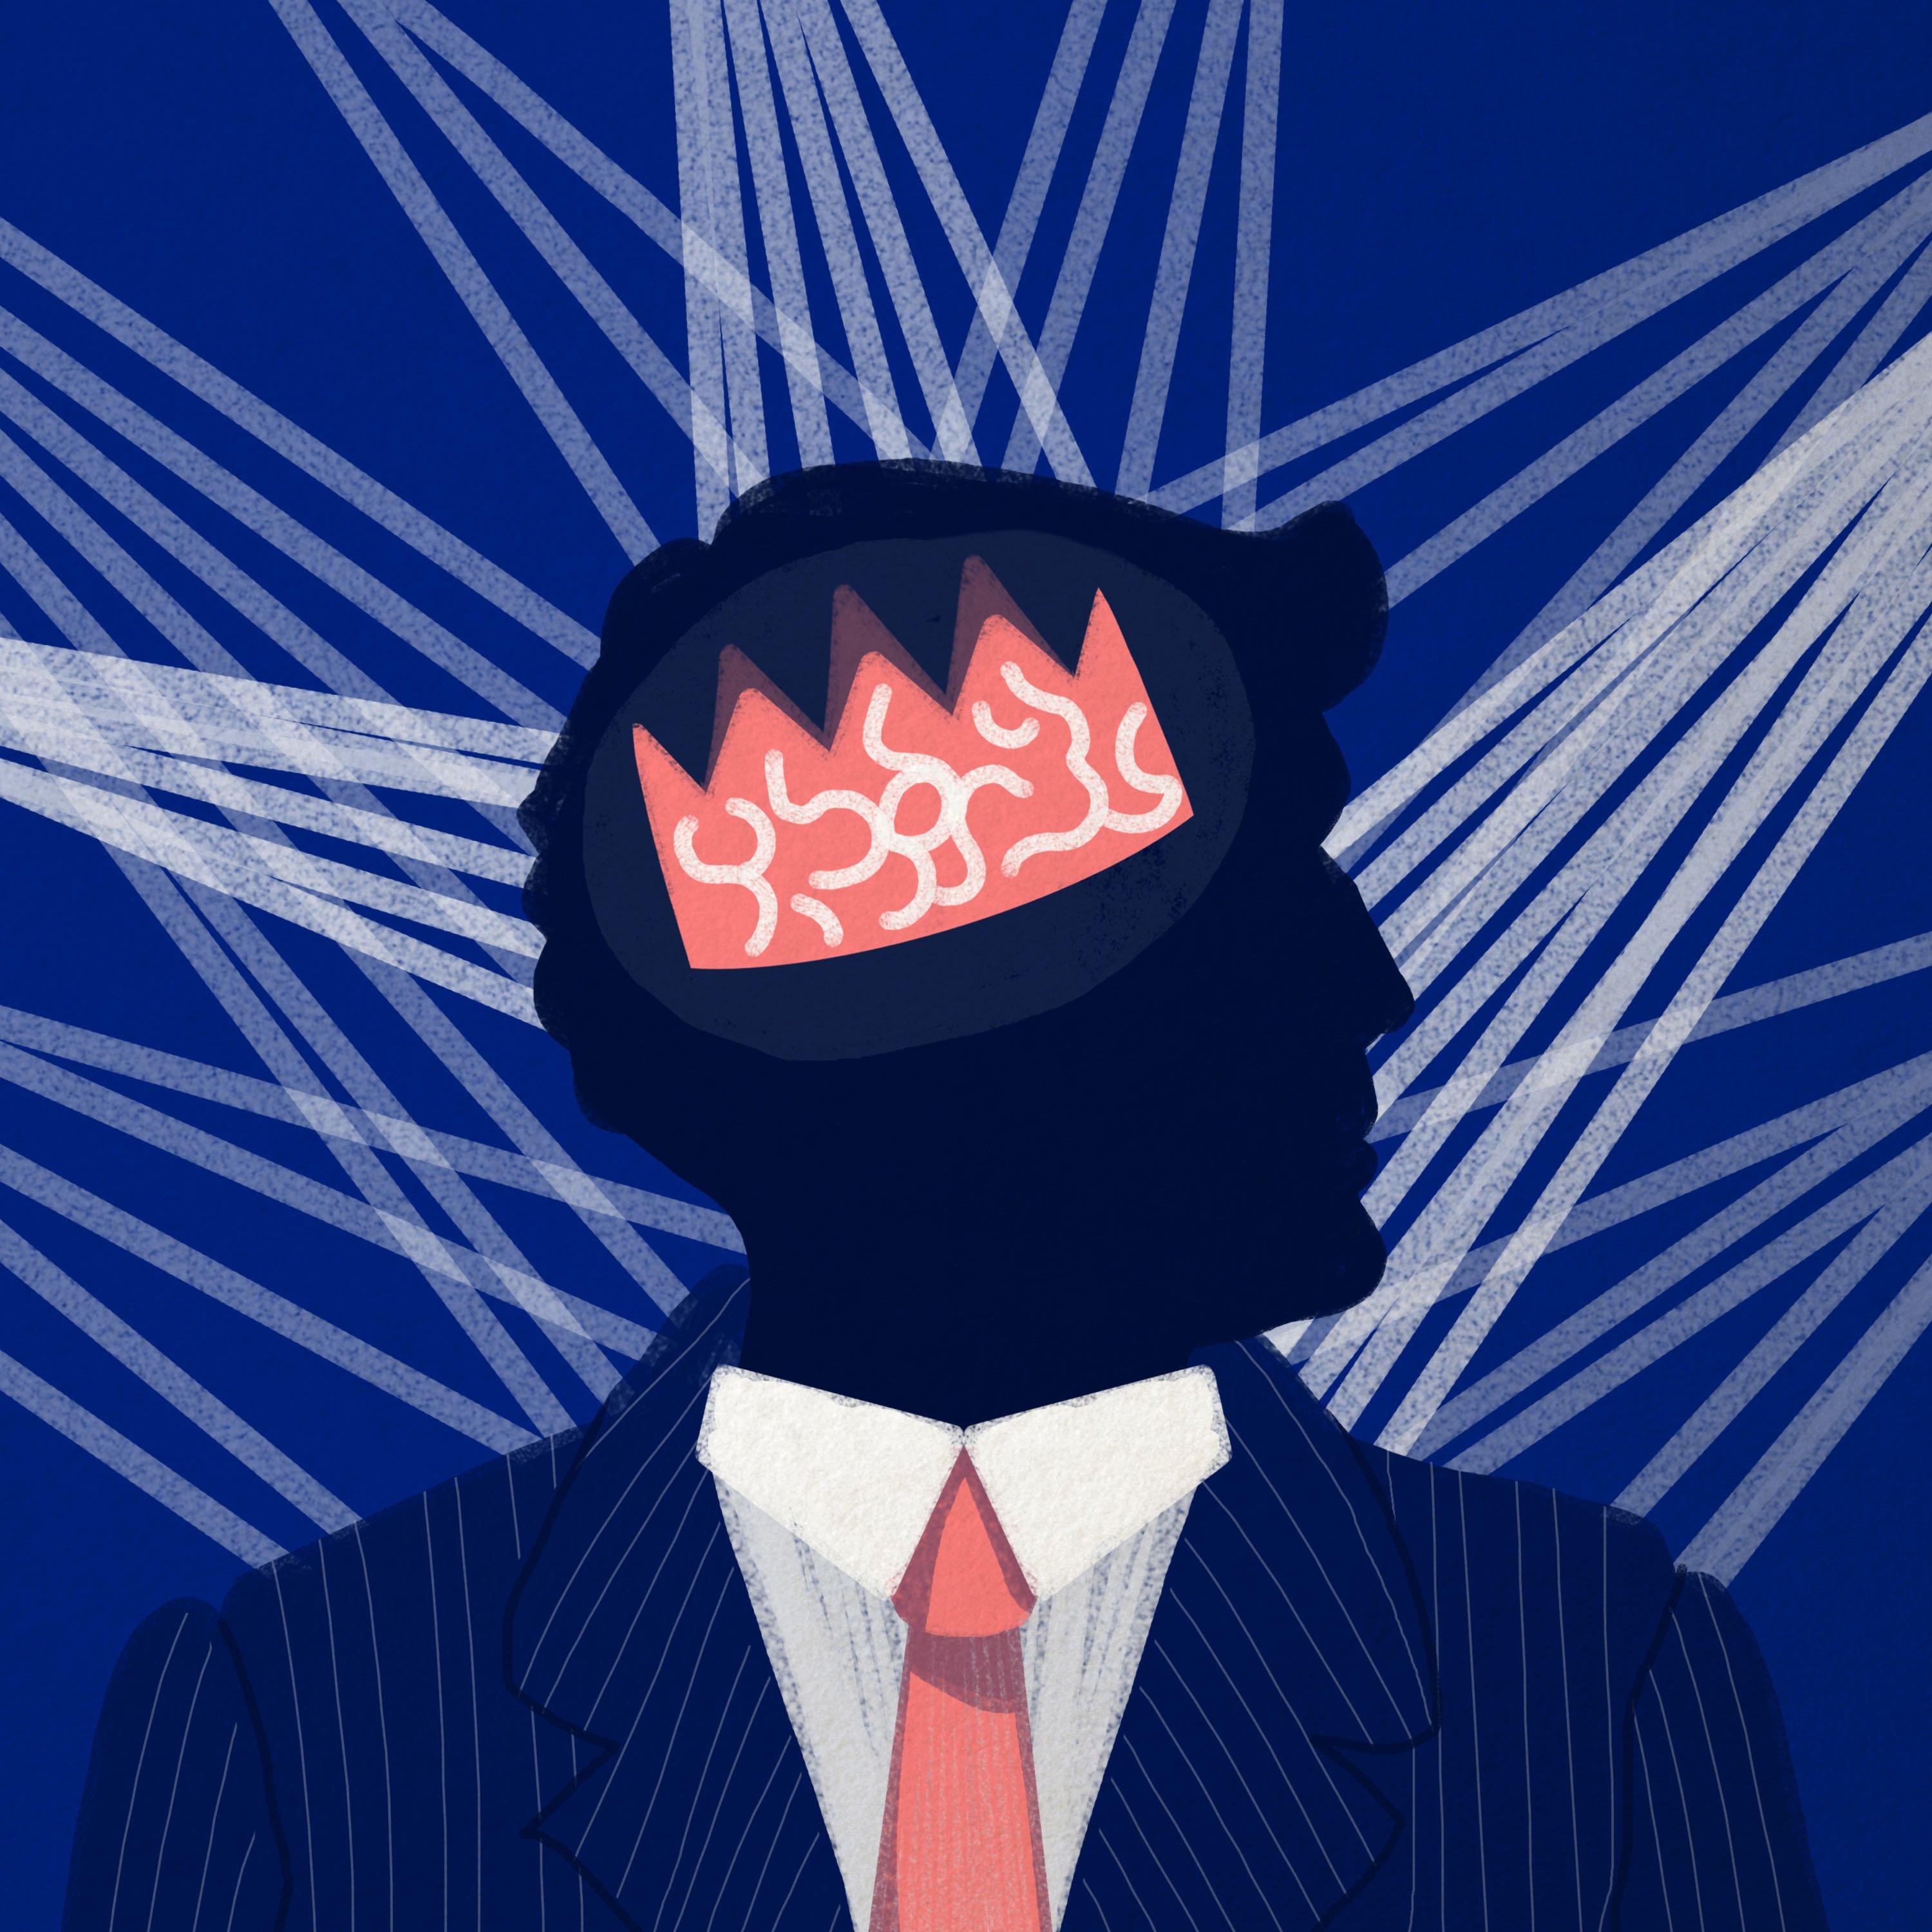 Schematyczny rysunek mężczyzny w garniturze z przekrzywioną koroną na głowie